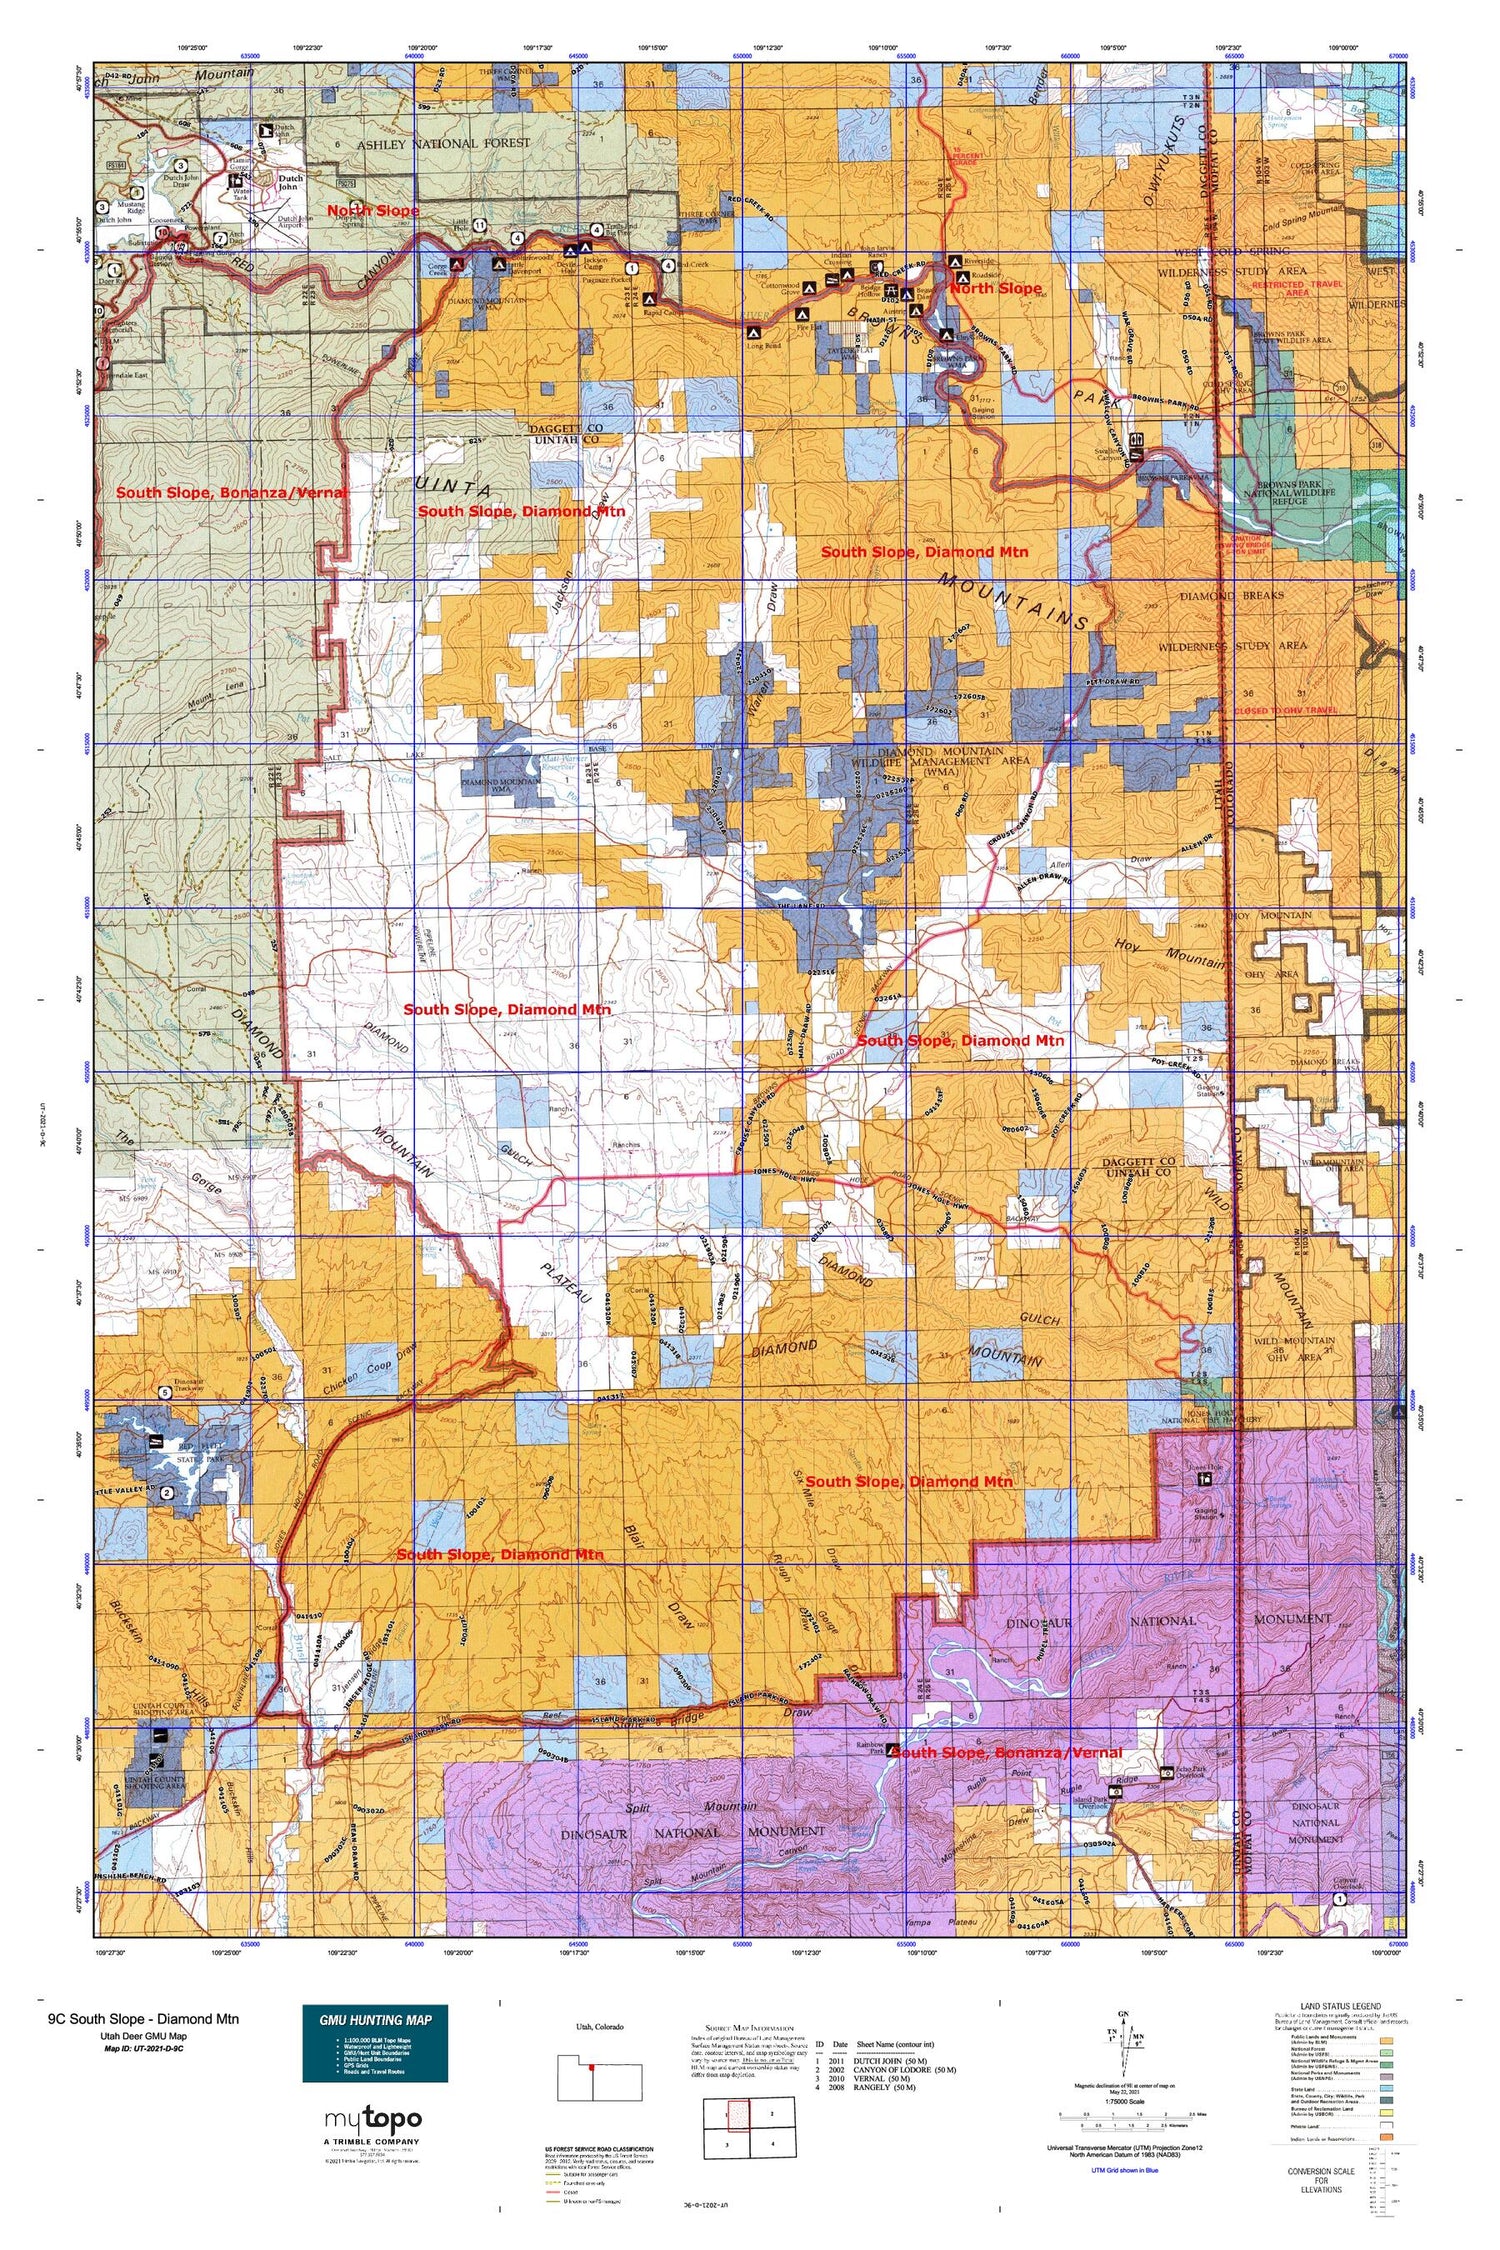 Utah Deer GMU 9C South Slope - Diamond Mtn Map Image